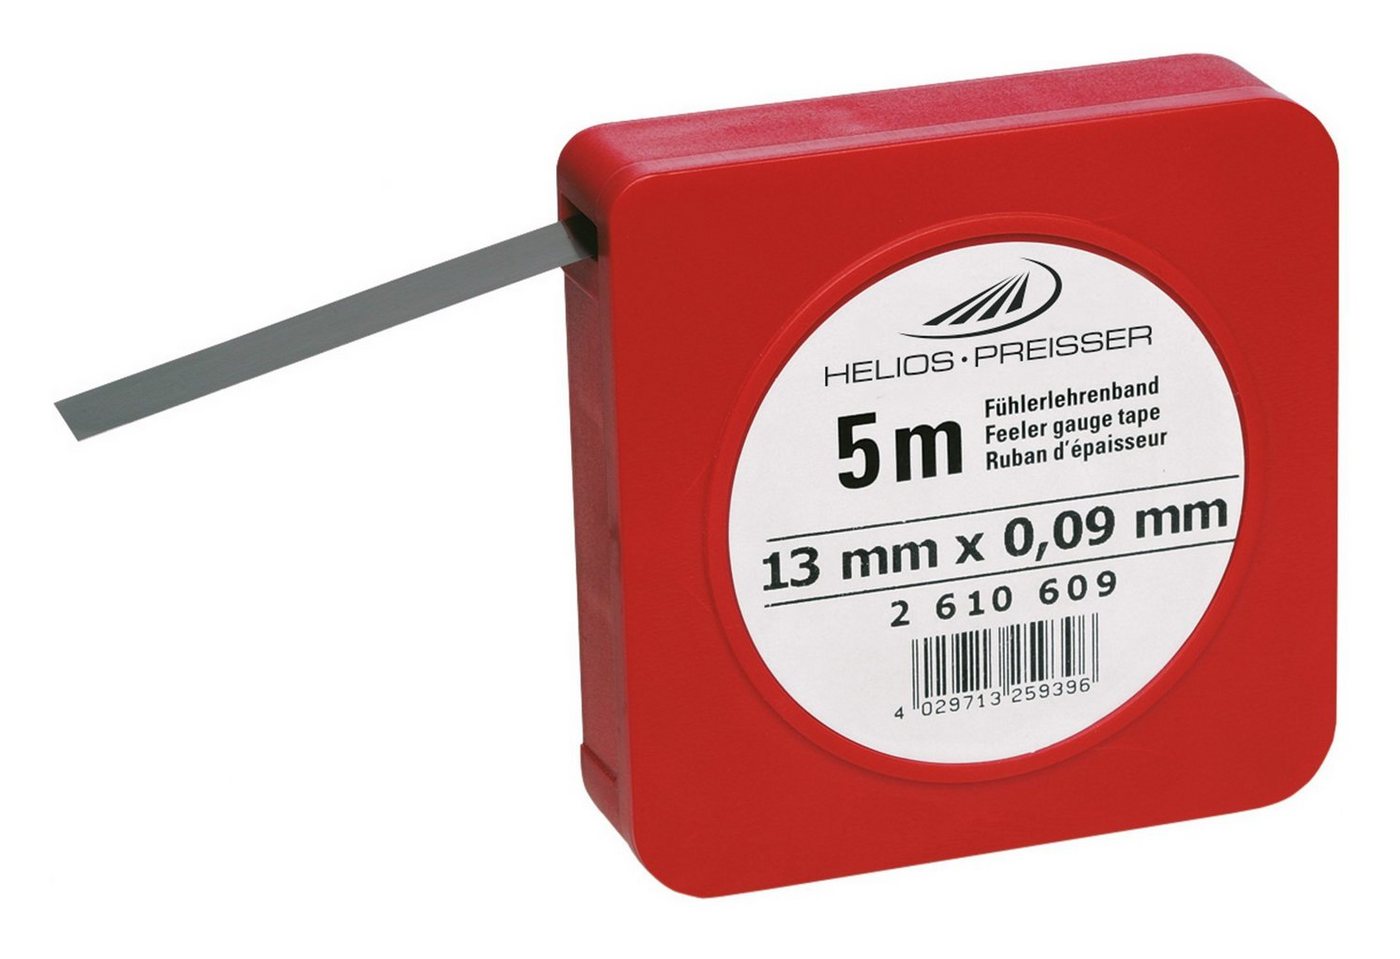 HELIOS PREISSER Fühlerlehre, Fühlerlehrenband 0,04 mm von HELIOS PREISSER